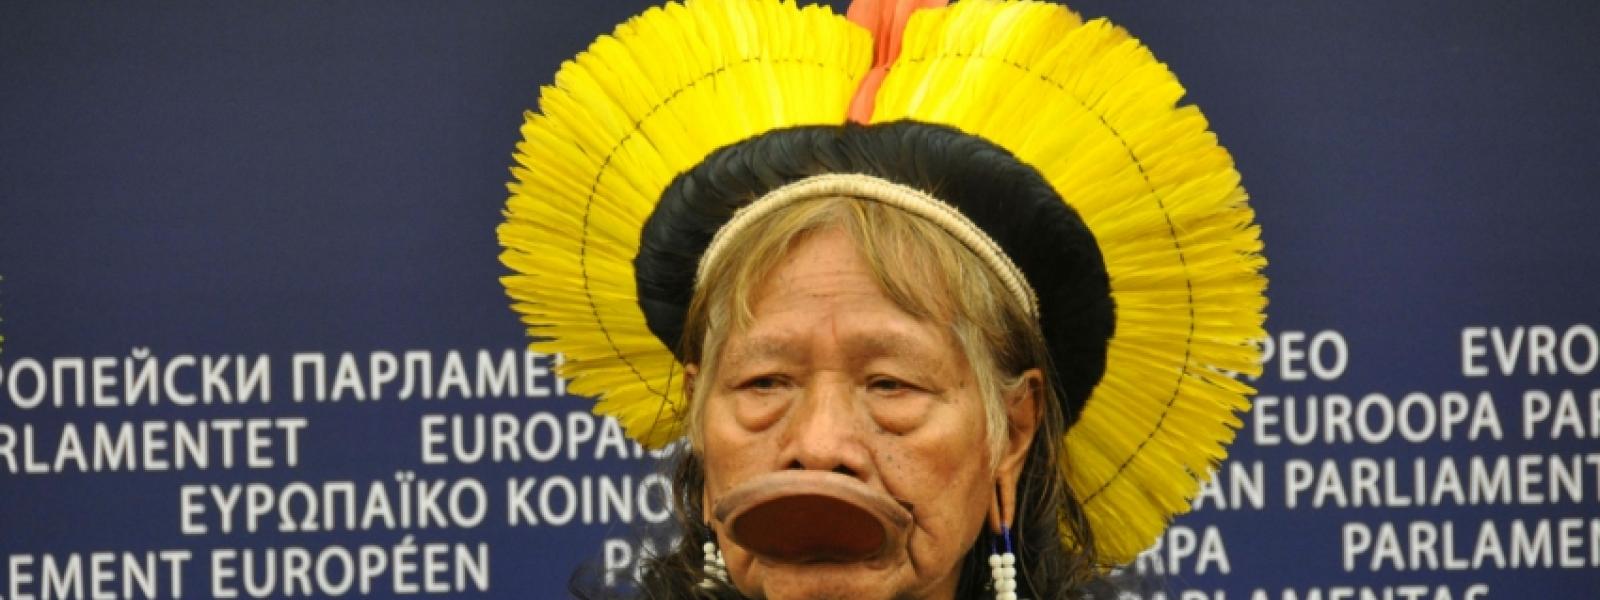 El Cacique Raoni, líder indígena brasileño, denuncia las amenazas a los derechos humanos del proyecto Belo Monte